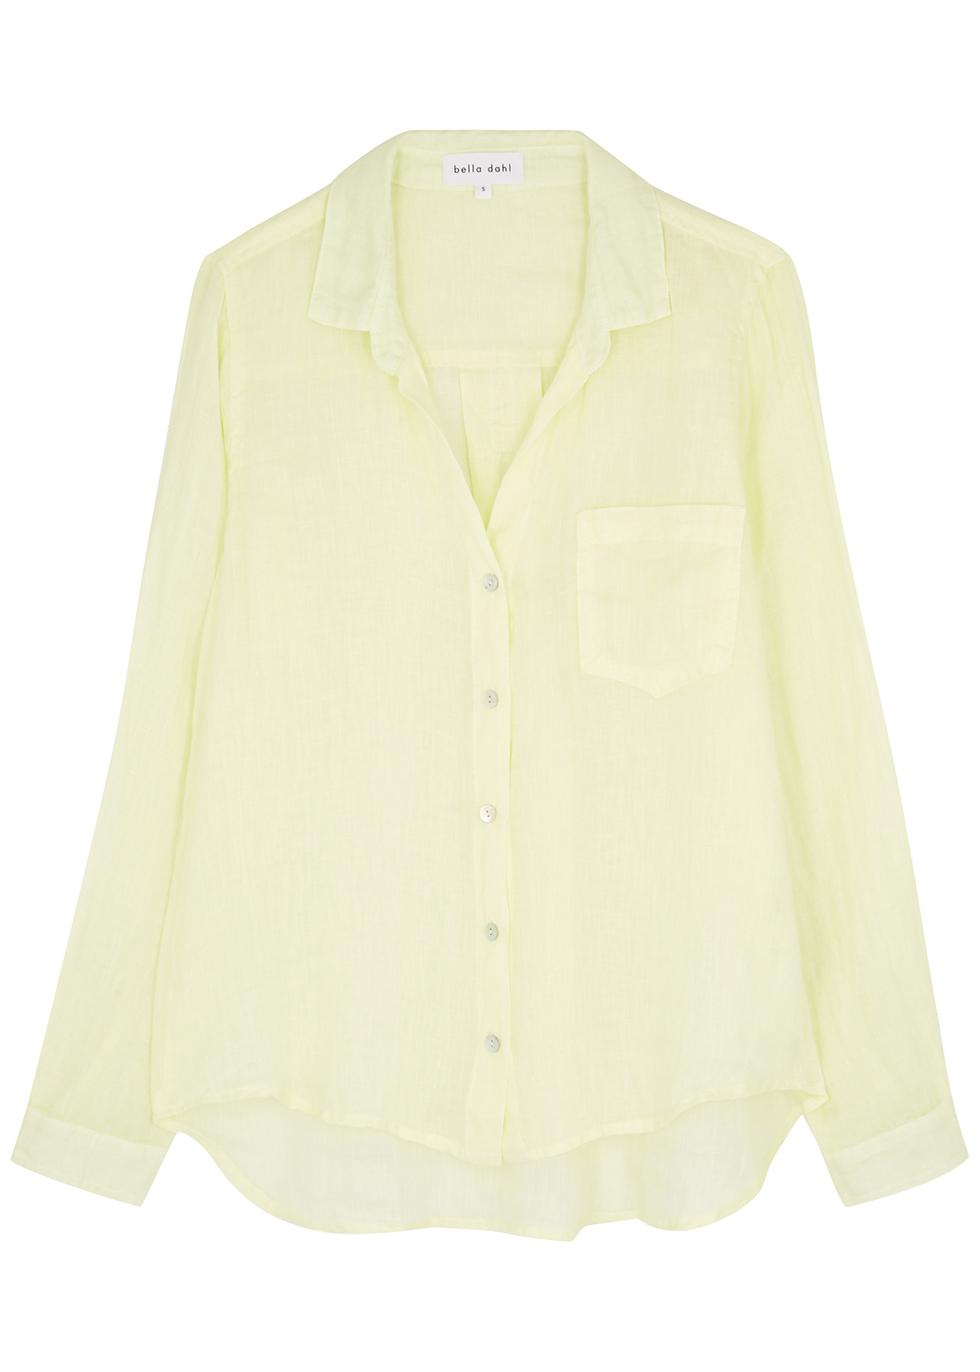 Yellow linen shirt by BELLA DAHL